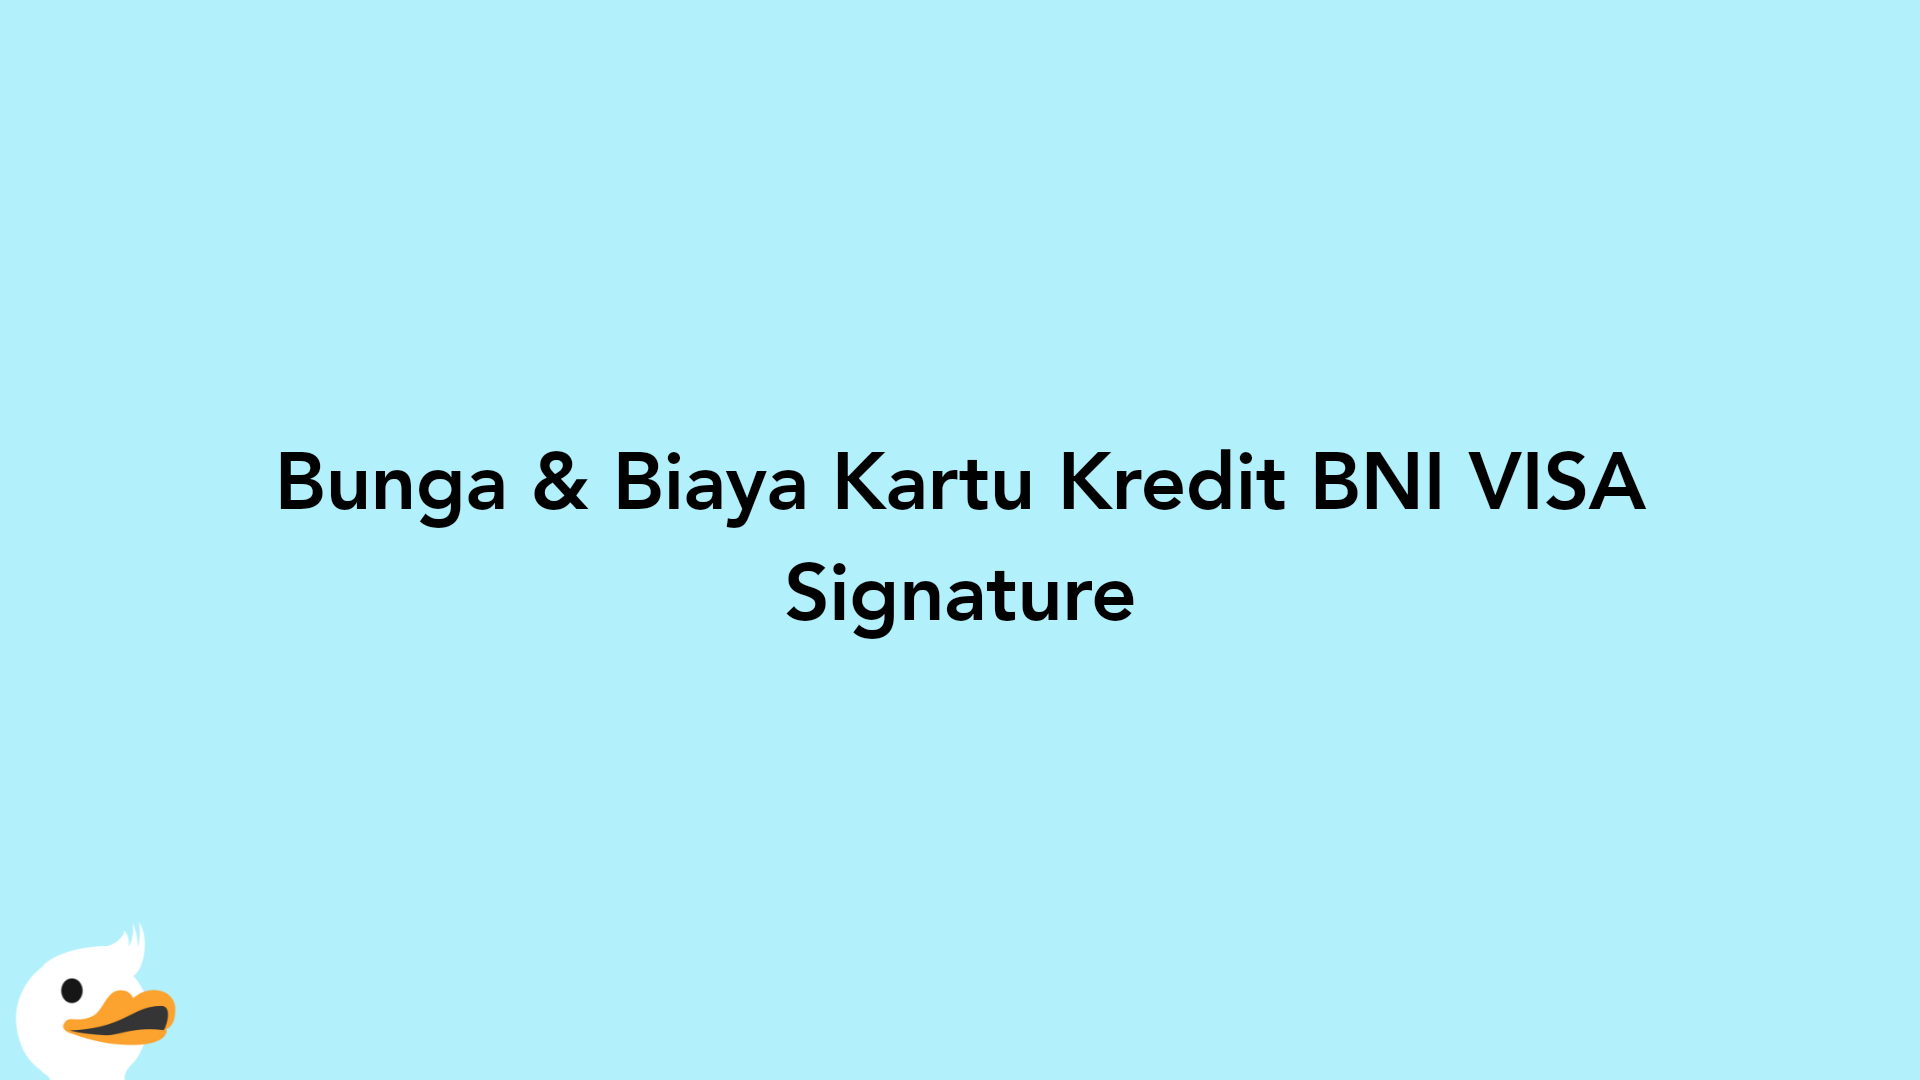 Bunga & Biaya Kartu Kredit BNI VISA Signature